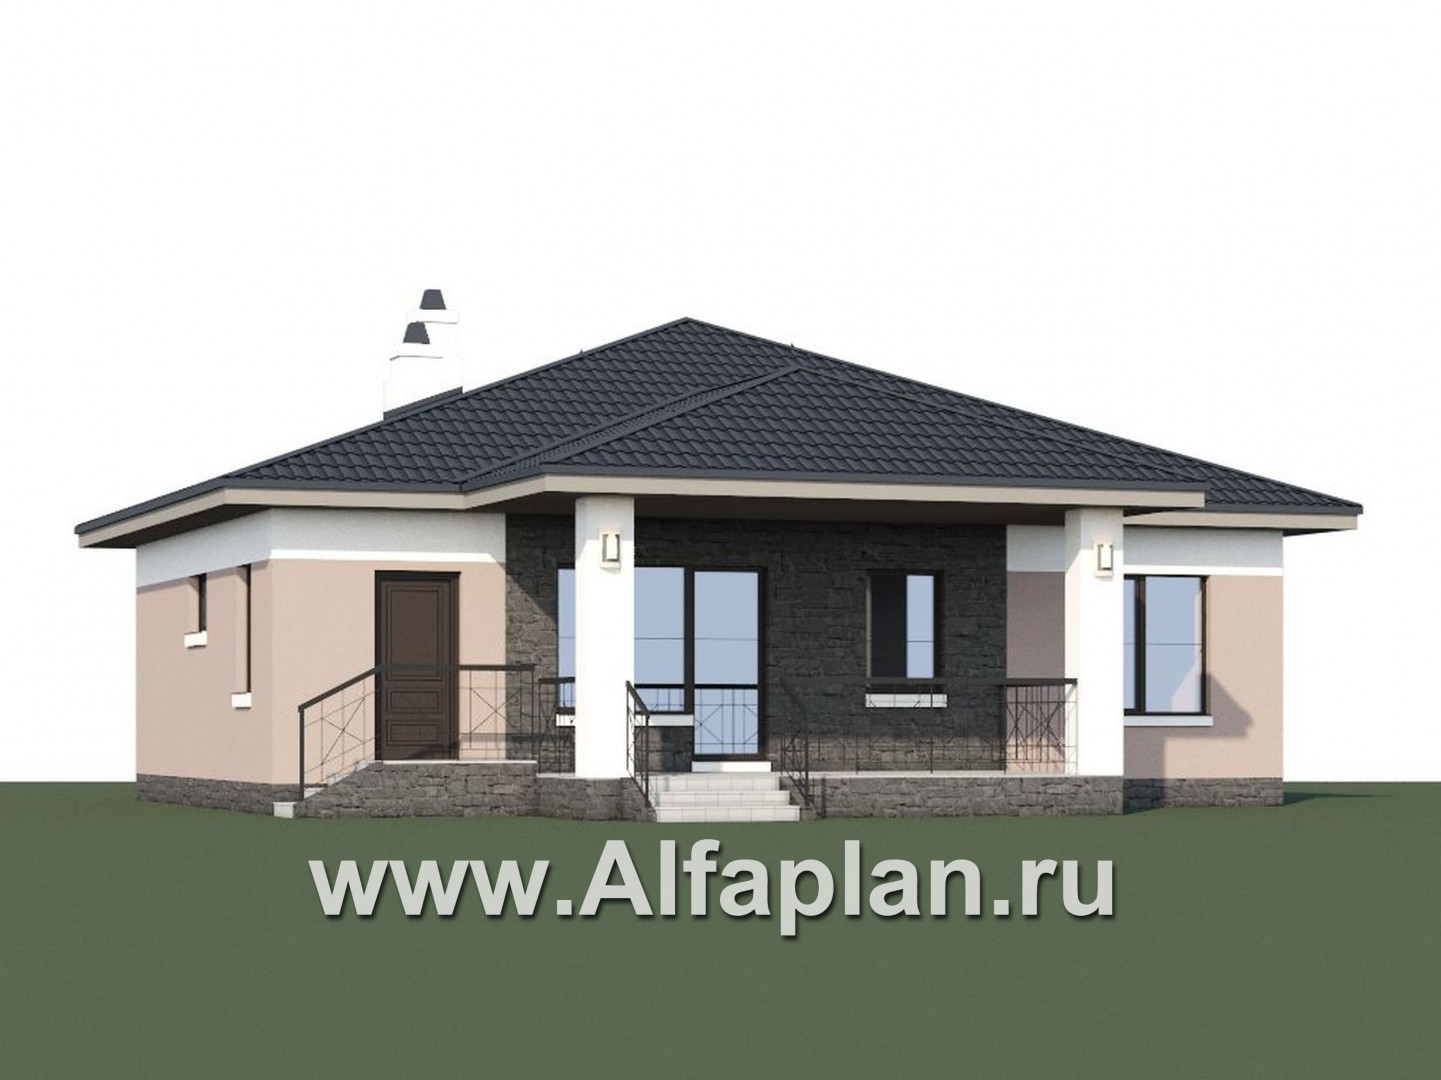 «Княженика» - проект одноэтажного дома, с террасой, планировка 2 спальни и сауна, для небольшой семьи - дизайн дома №1